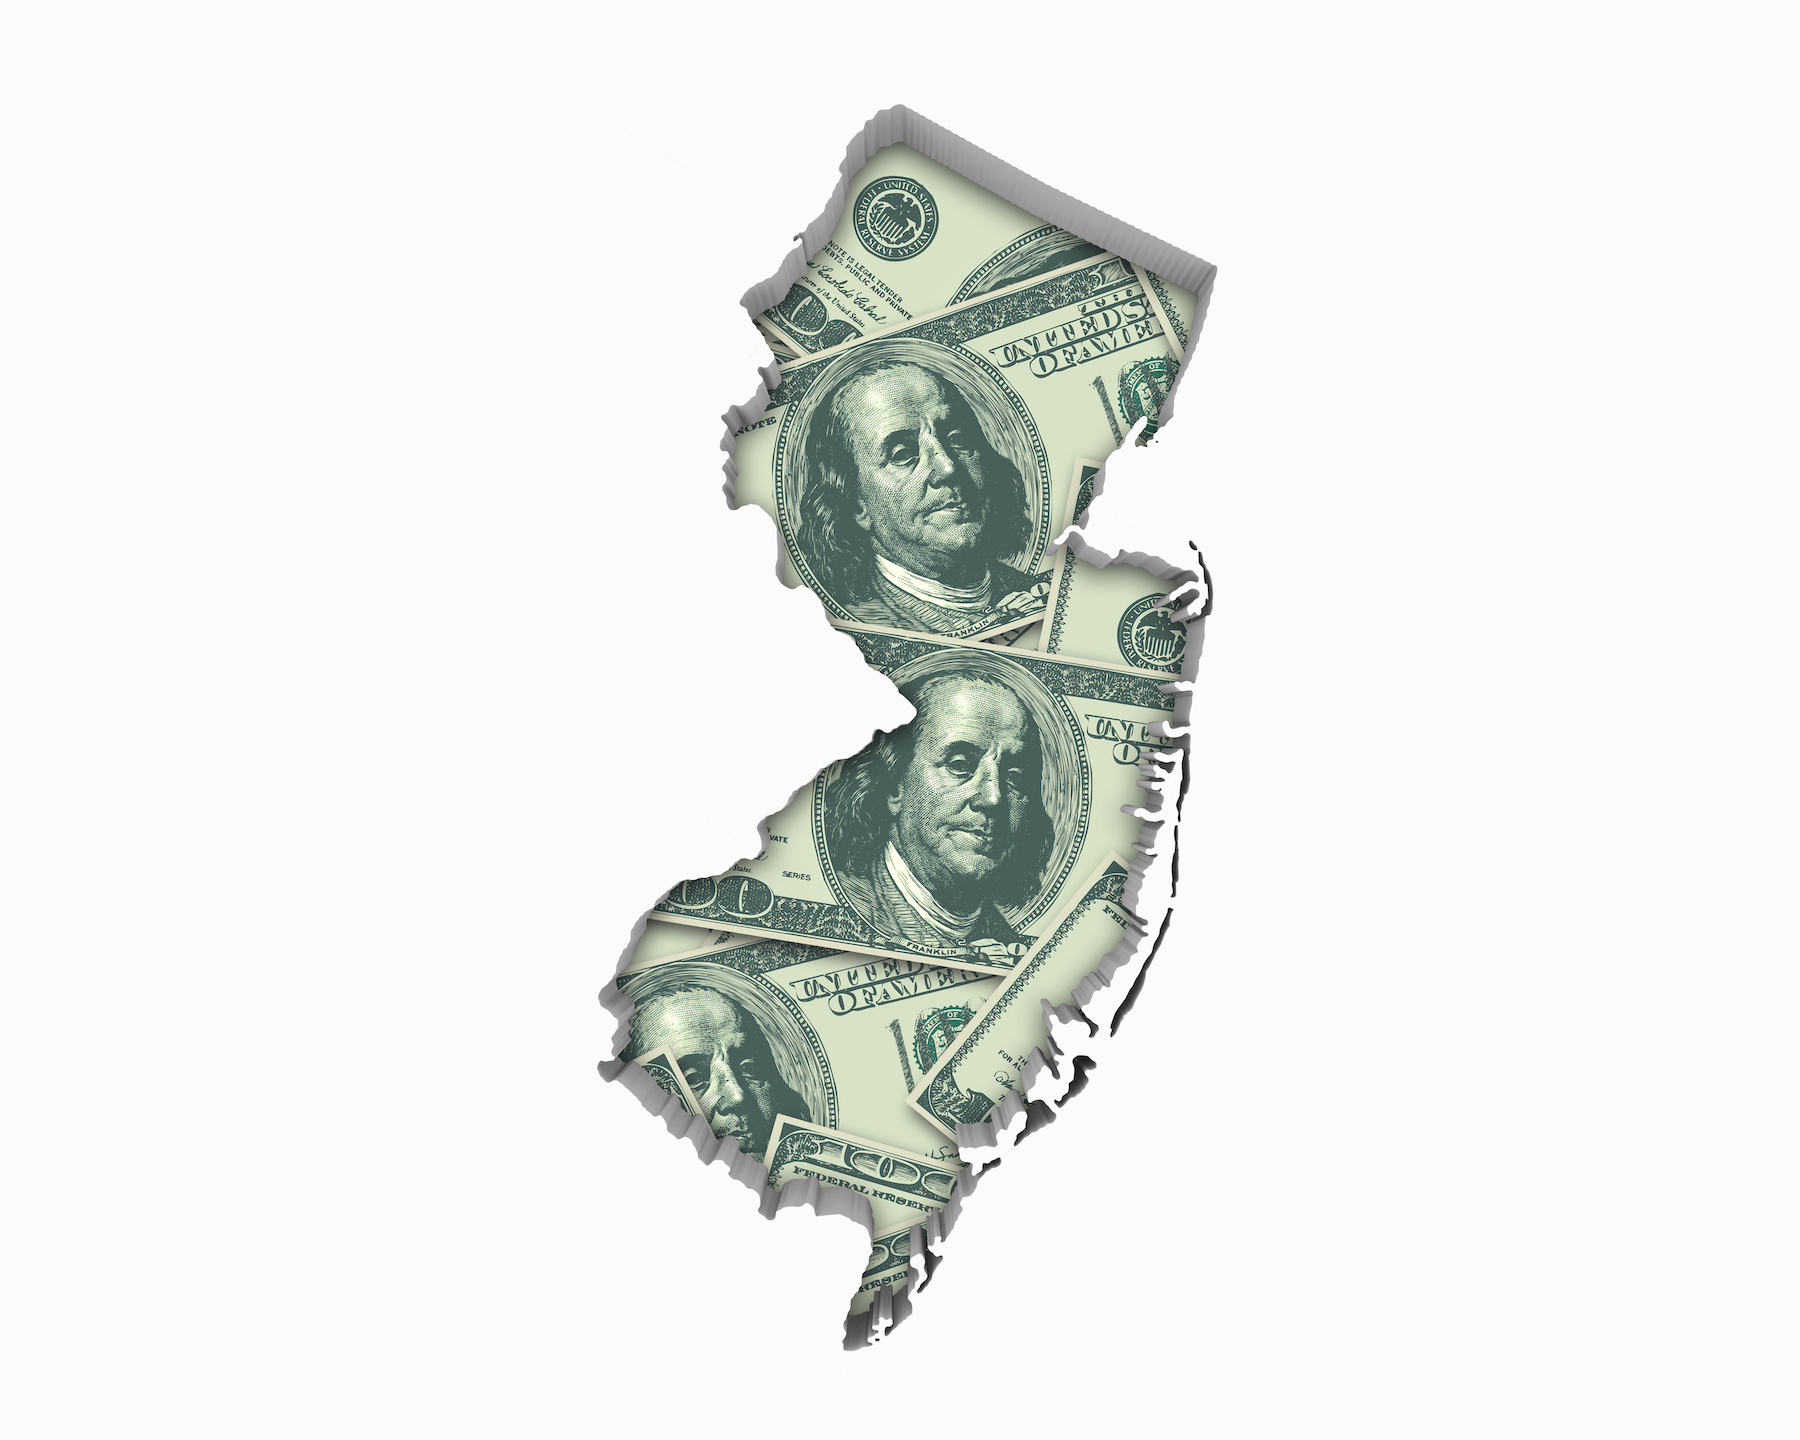 New Jersey Tax